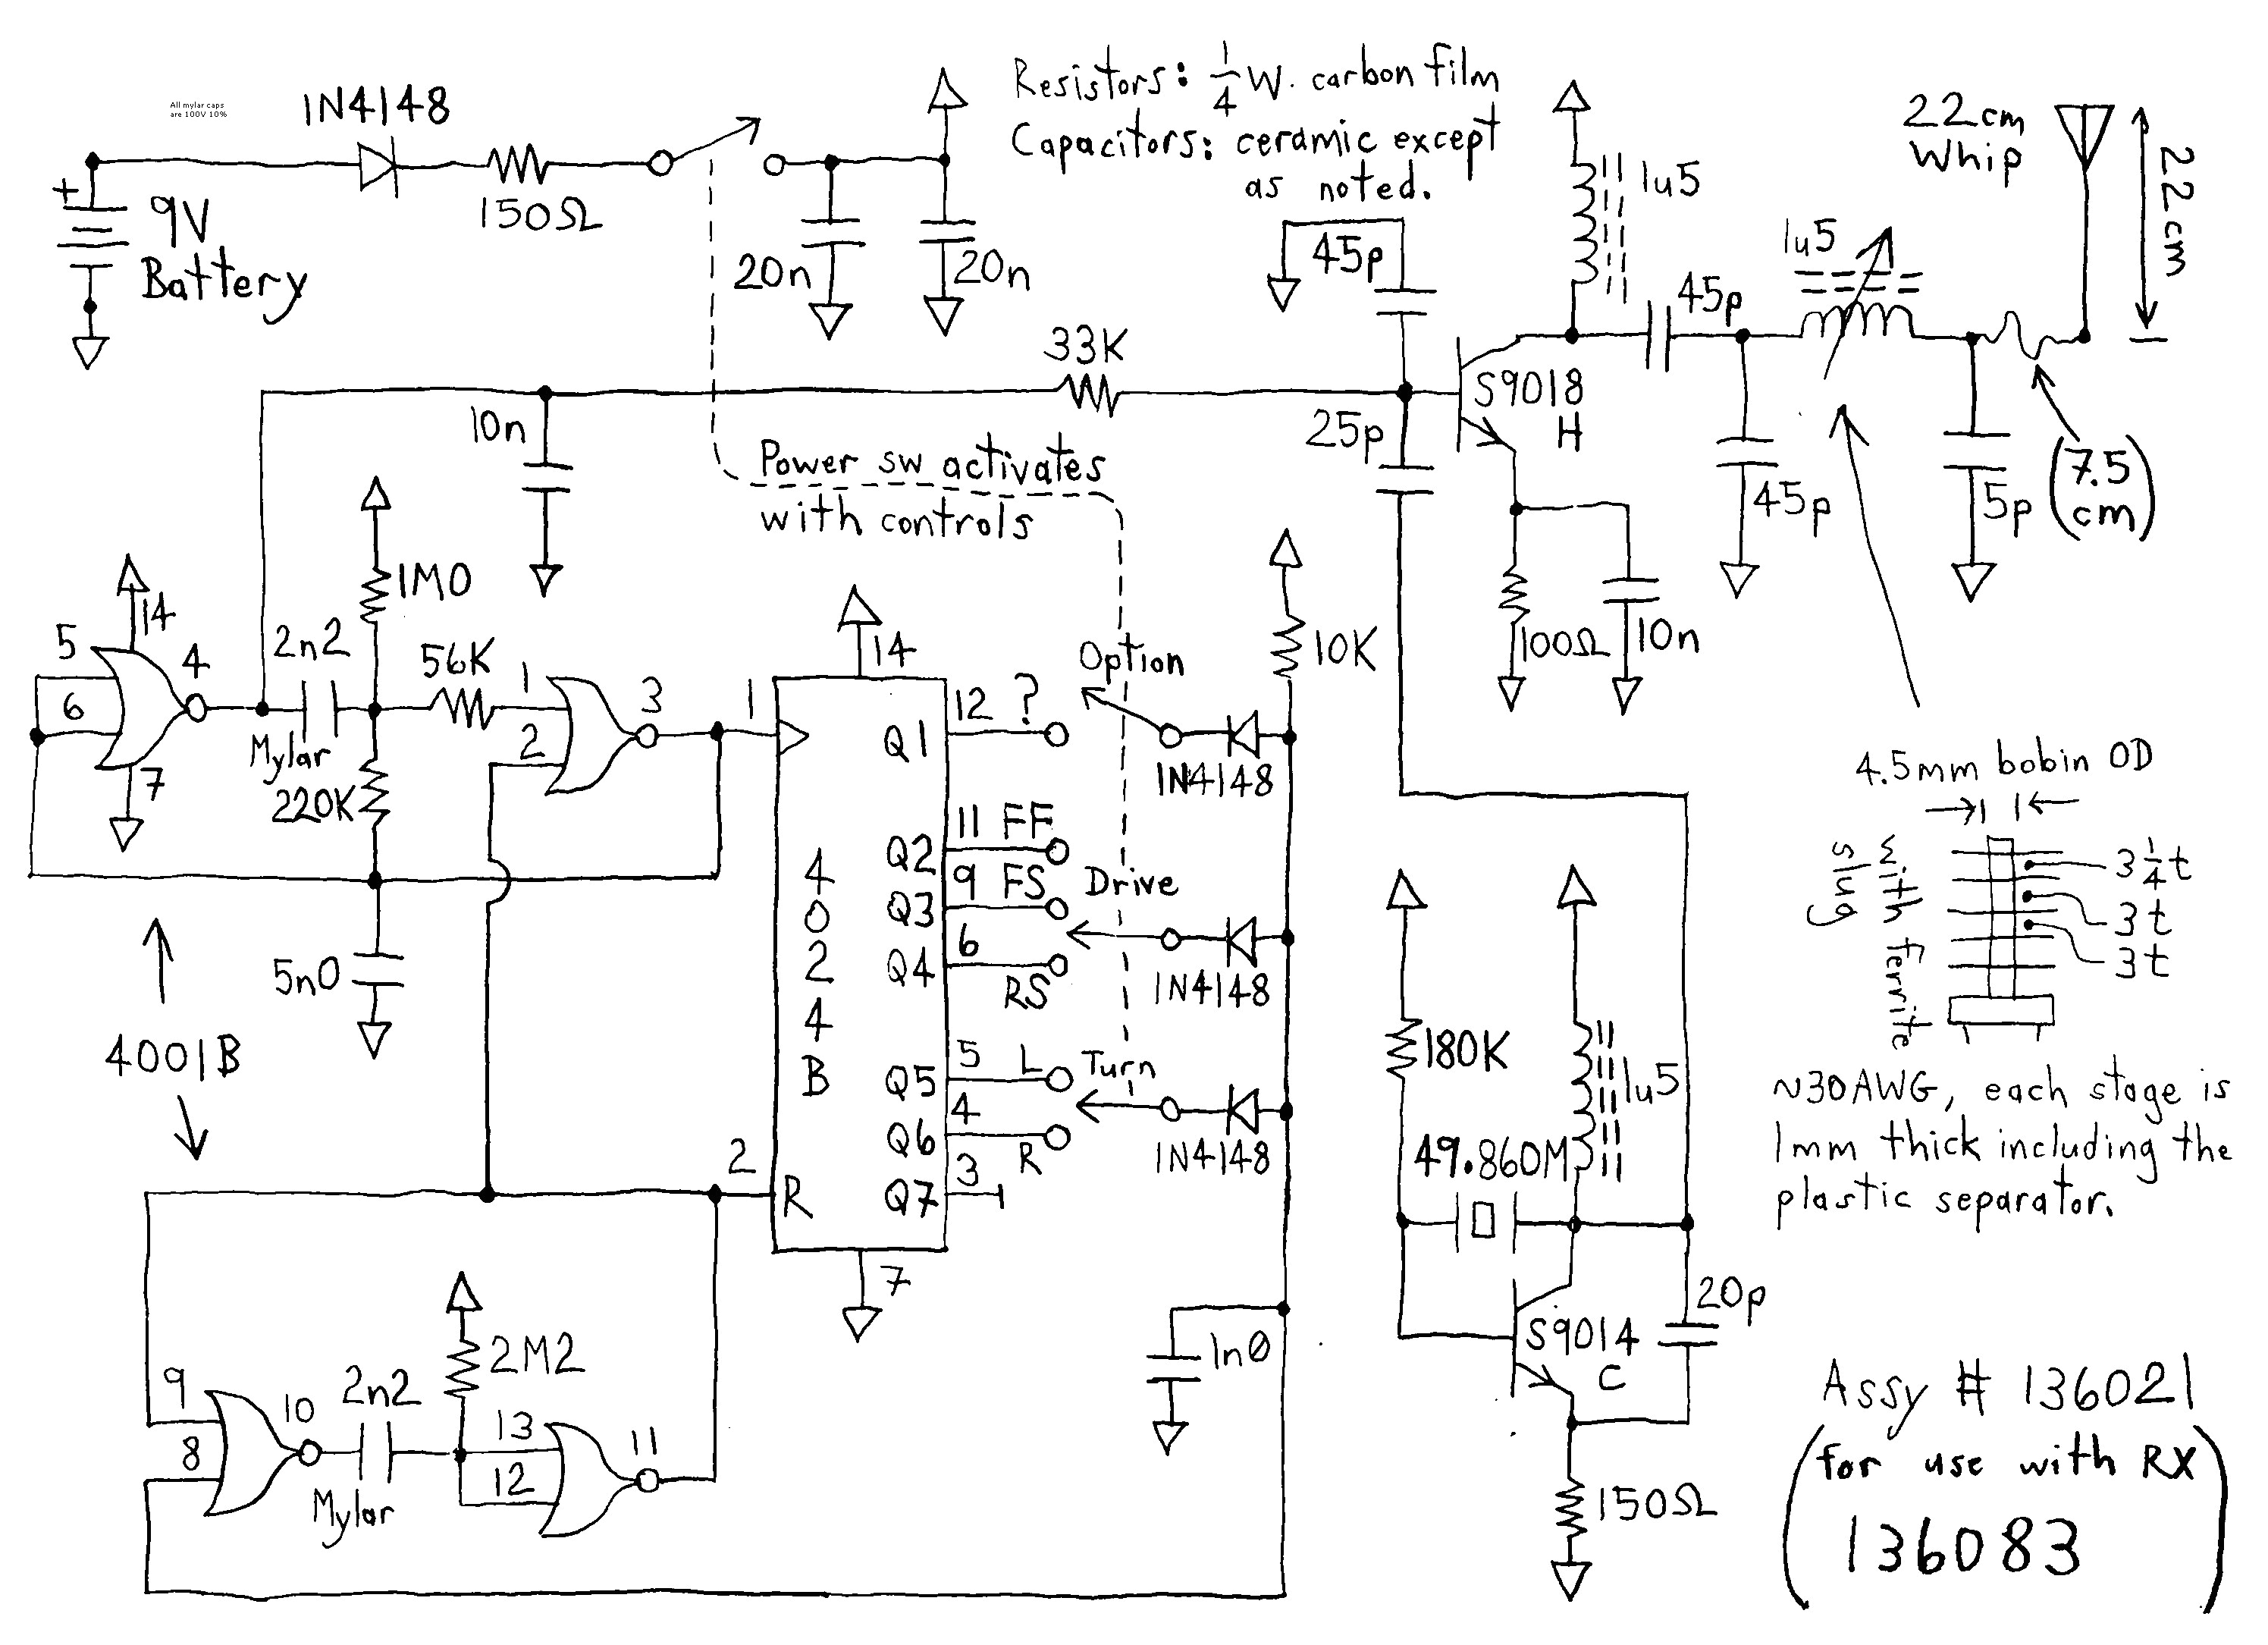 sym cdi wiring diagram wiring diagramwrg 1615 sym cdi wiring diagramsym cdi wiring diagram 11